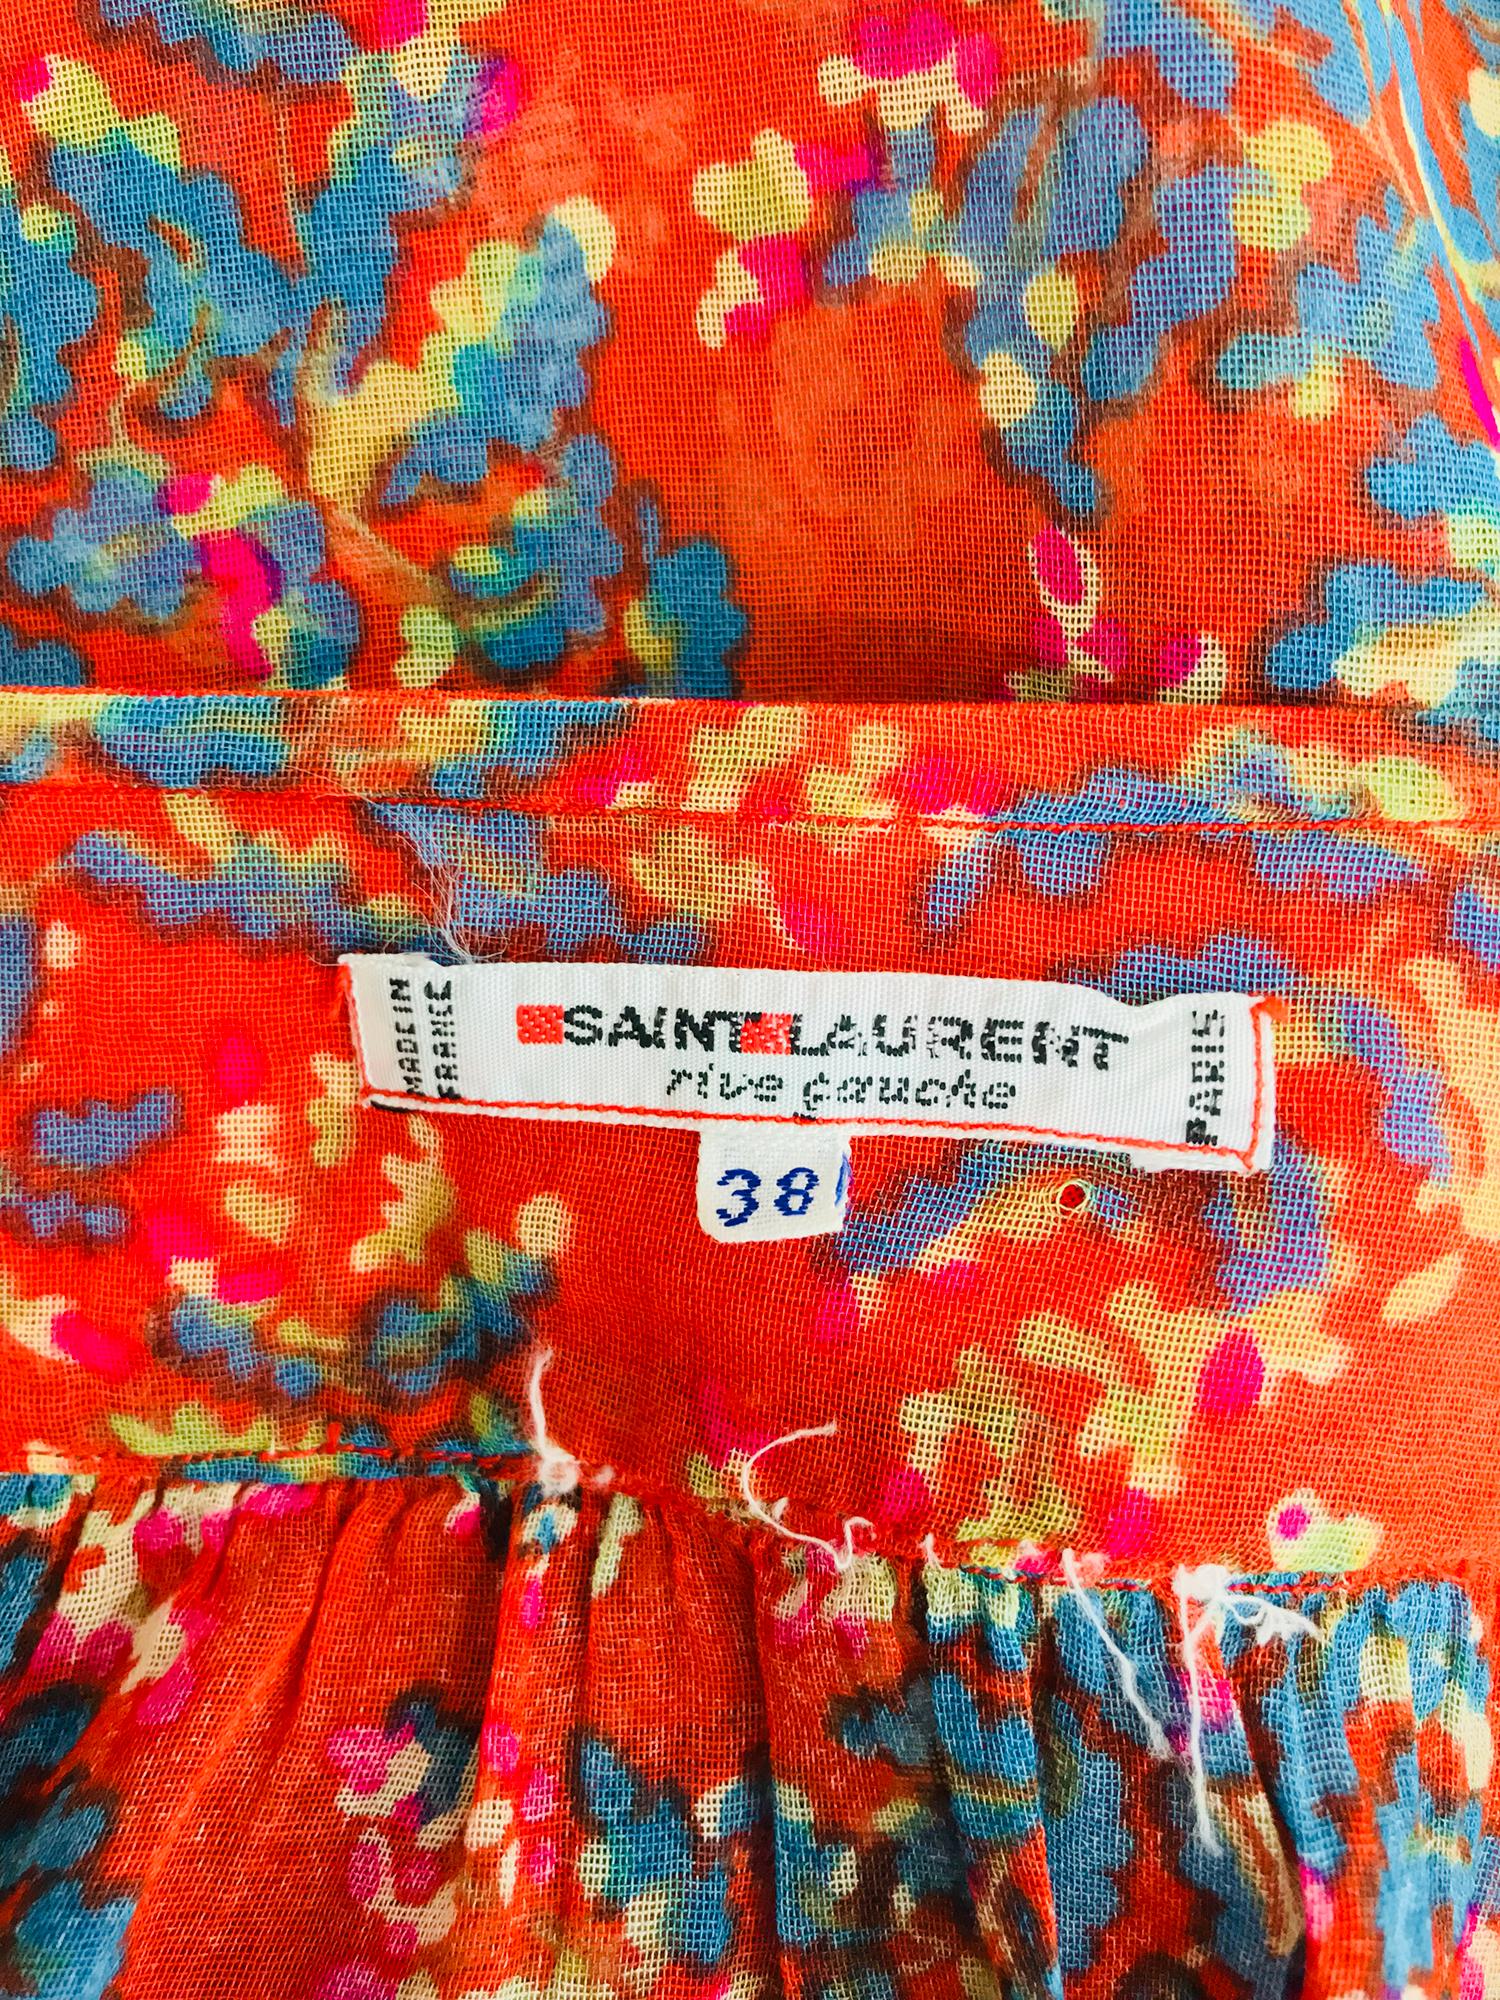 Yves Saint Laurent sheer floral cotton peasant blouse 1970s 7